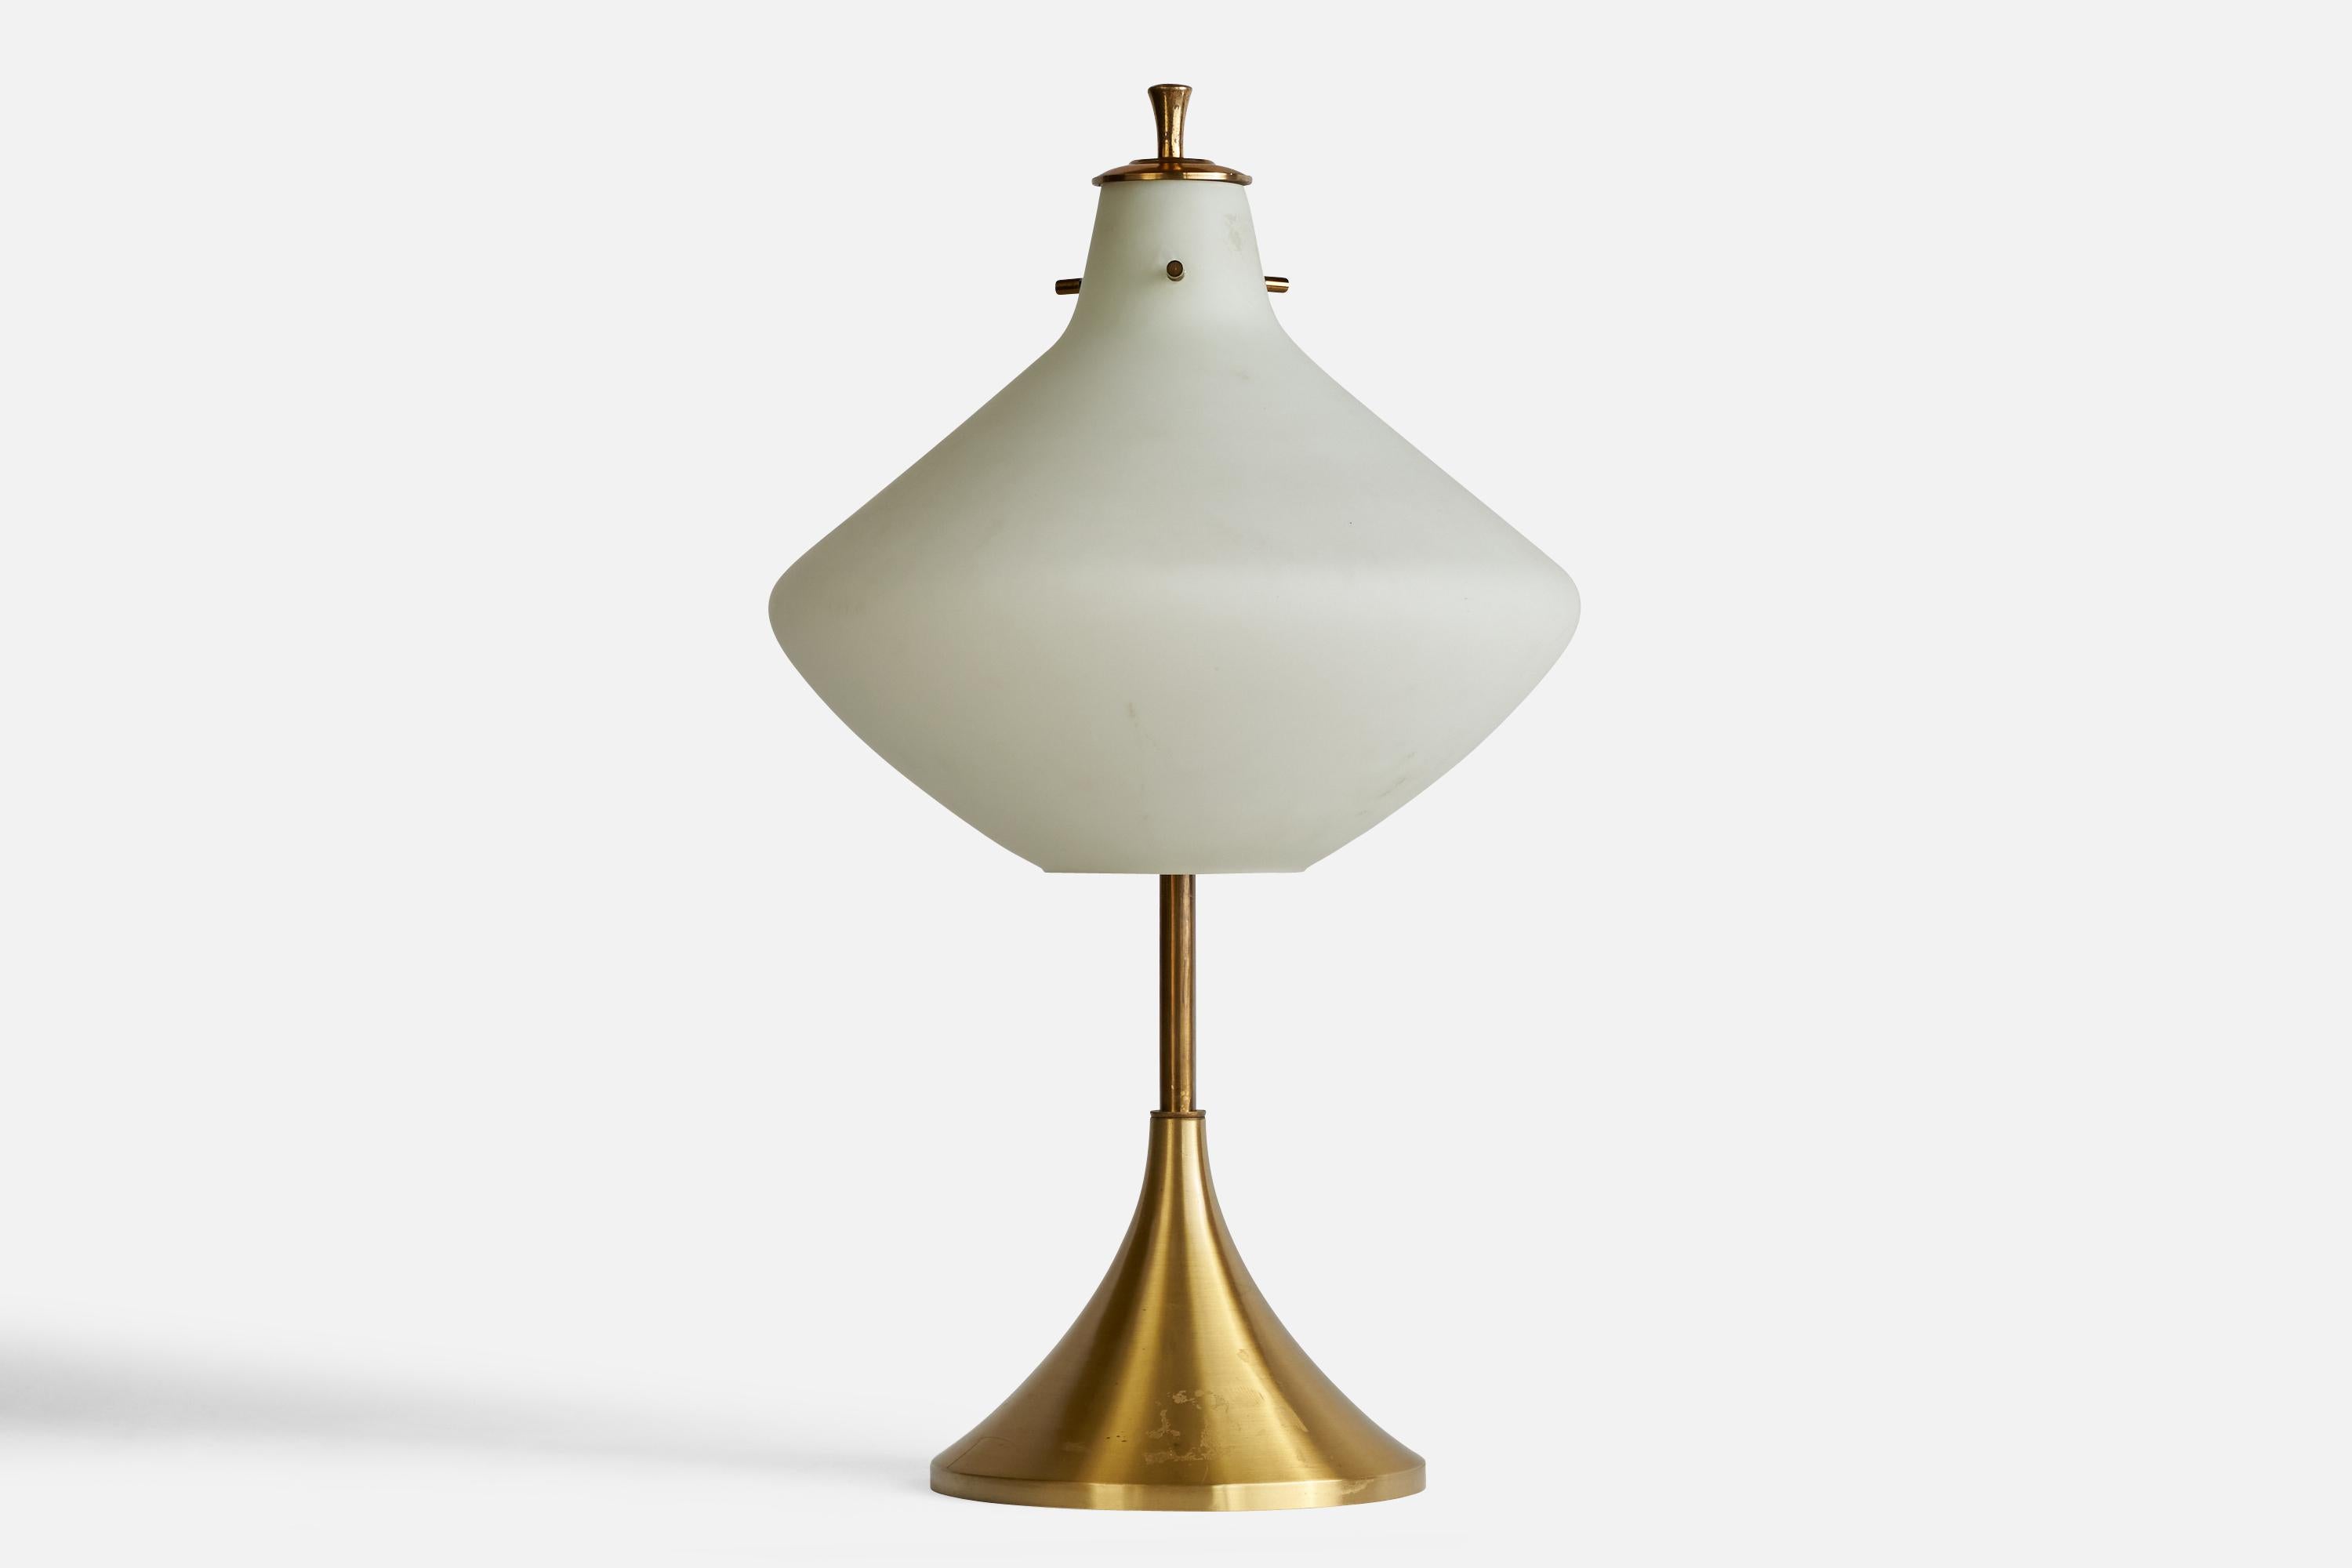 Lampe de table en laiton et verre opalin, conçue et produite en Italie, années 1950.

Dimensions globales (pouces) : 23